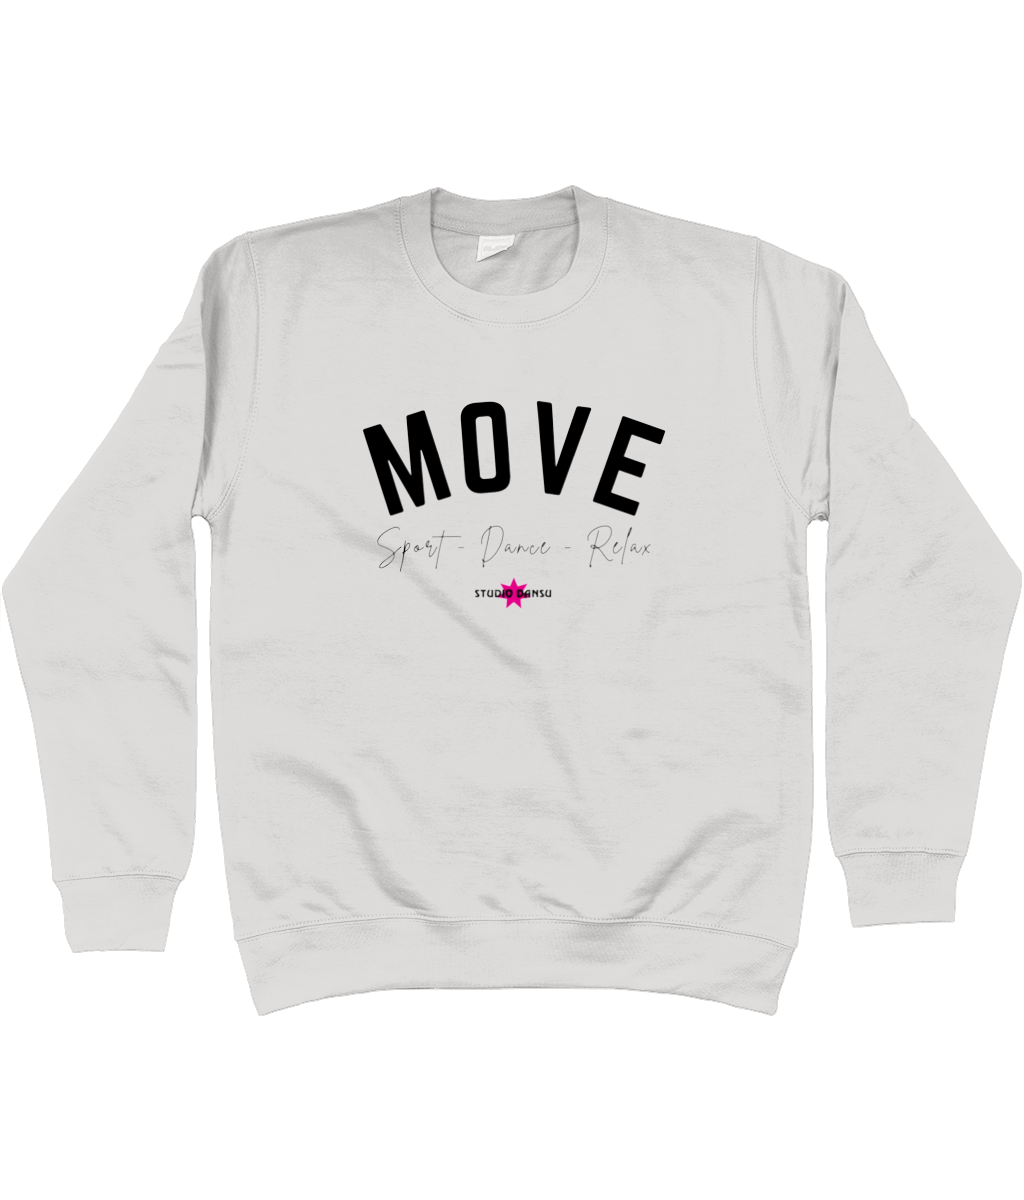 Sweatshirt Move